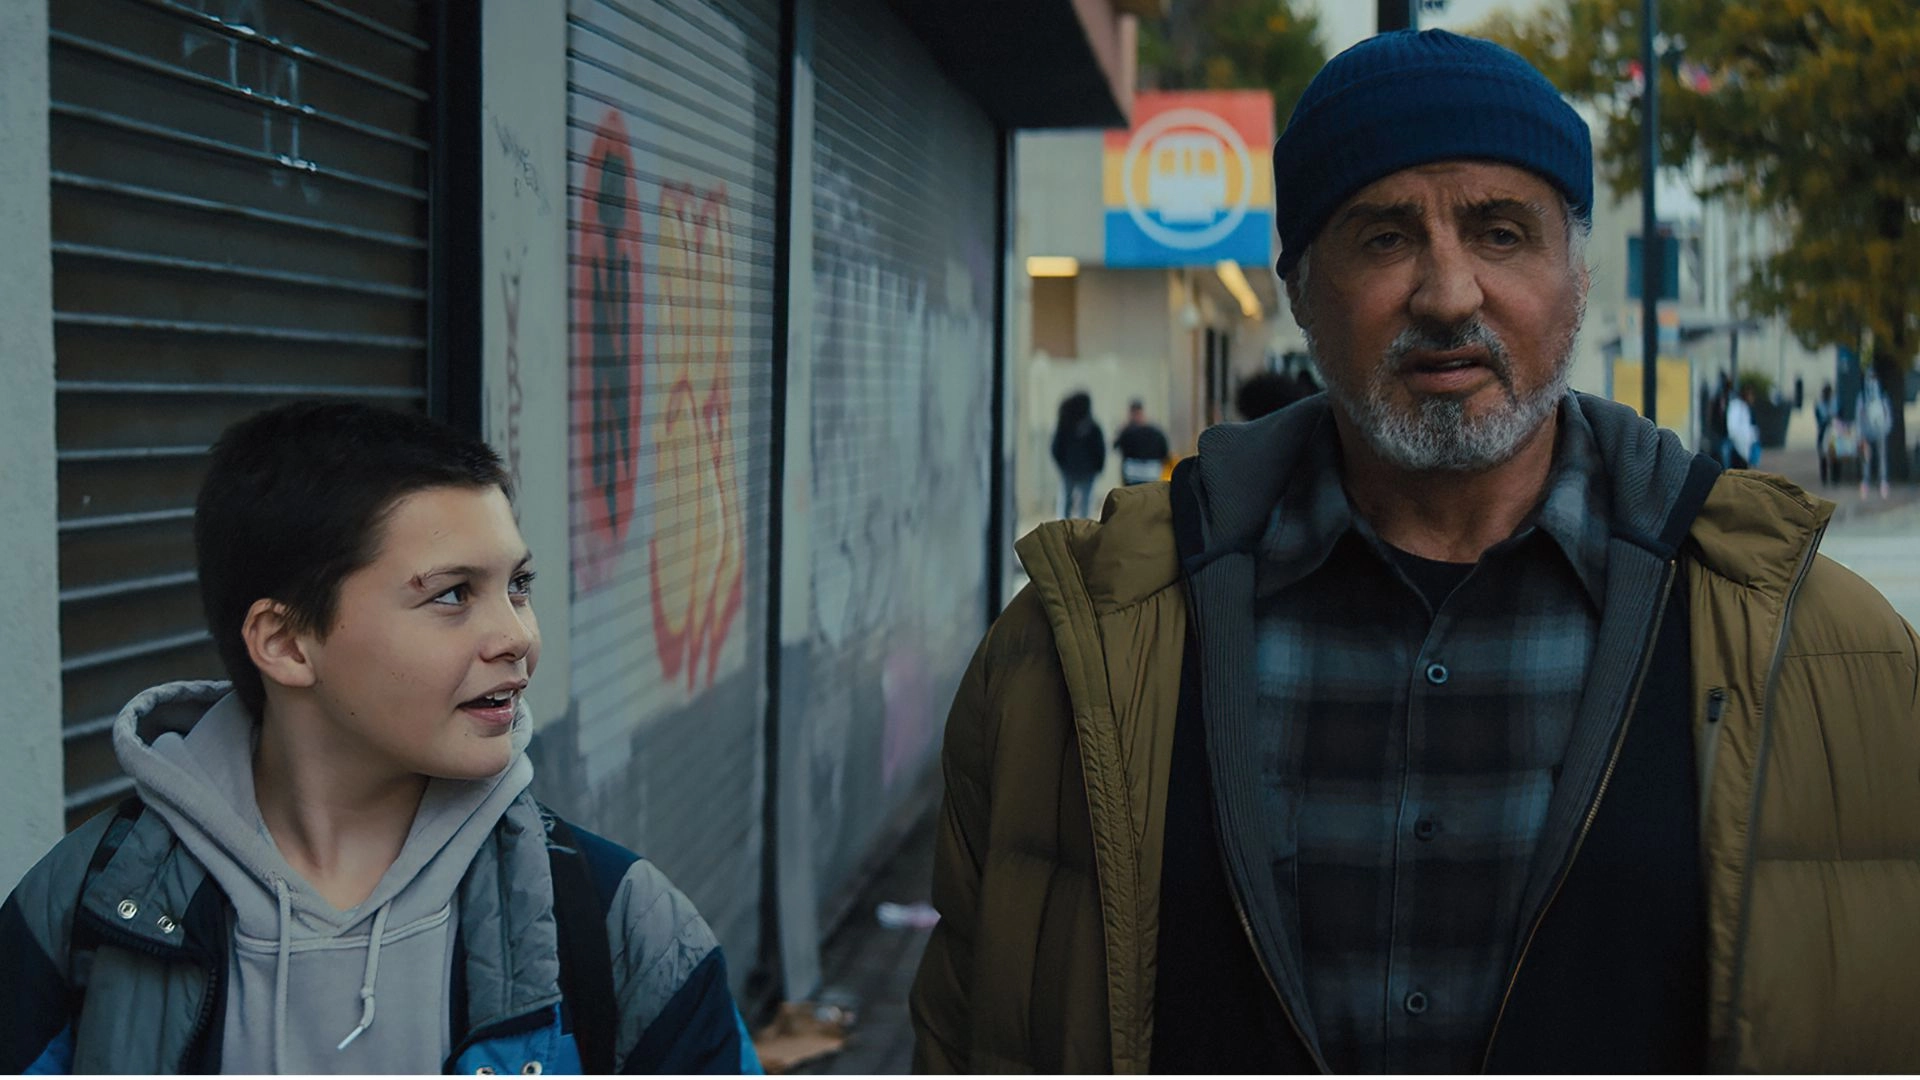 Stallone's Superhero Film "Samaritan" Gets Unexpected Sequel